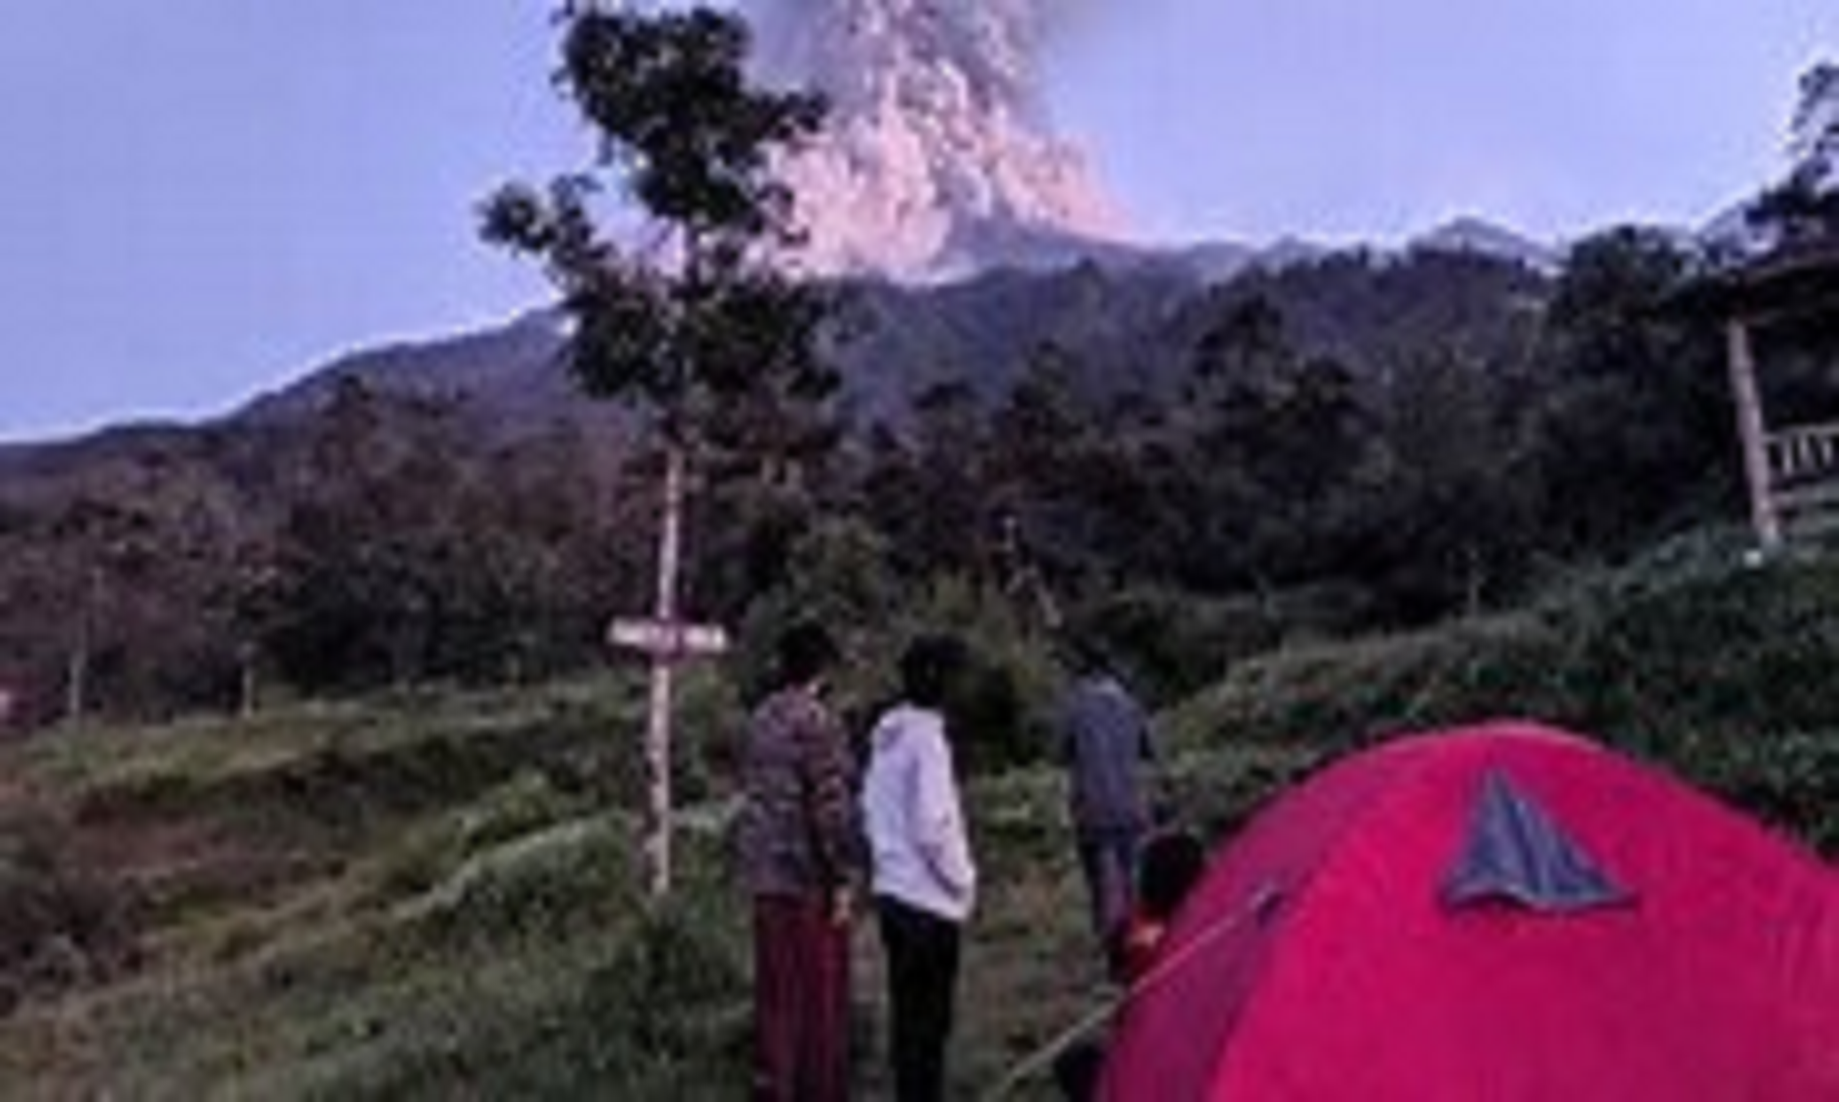 Indonesia’s Most Active Volcano Erupts, Flight Alert Issued